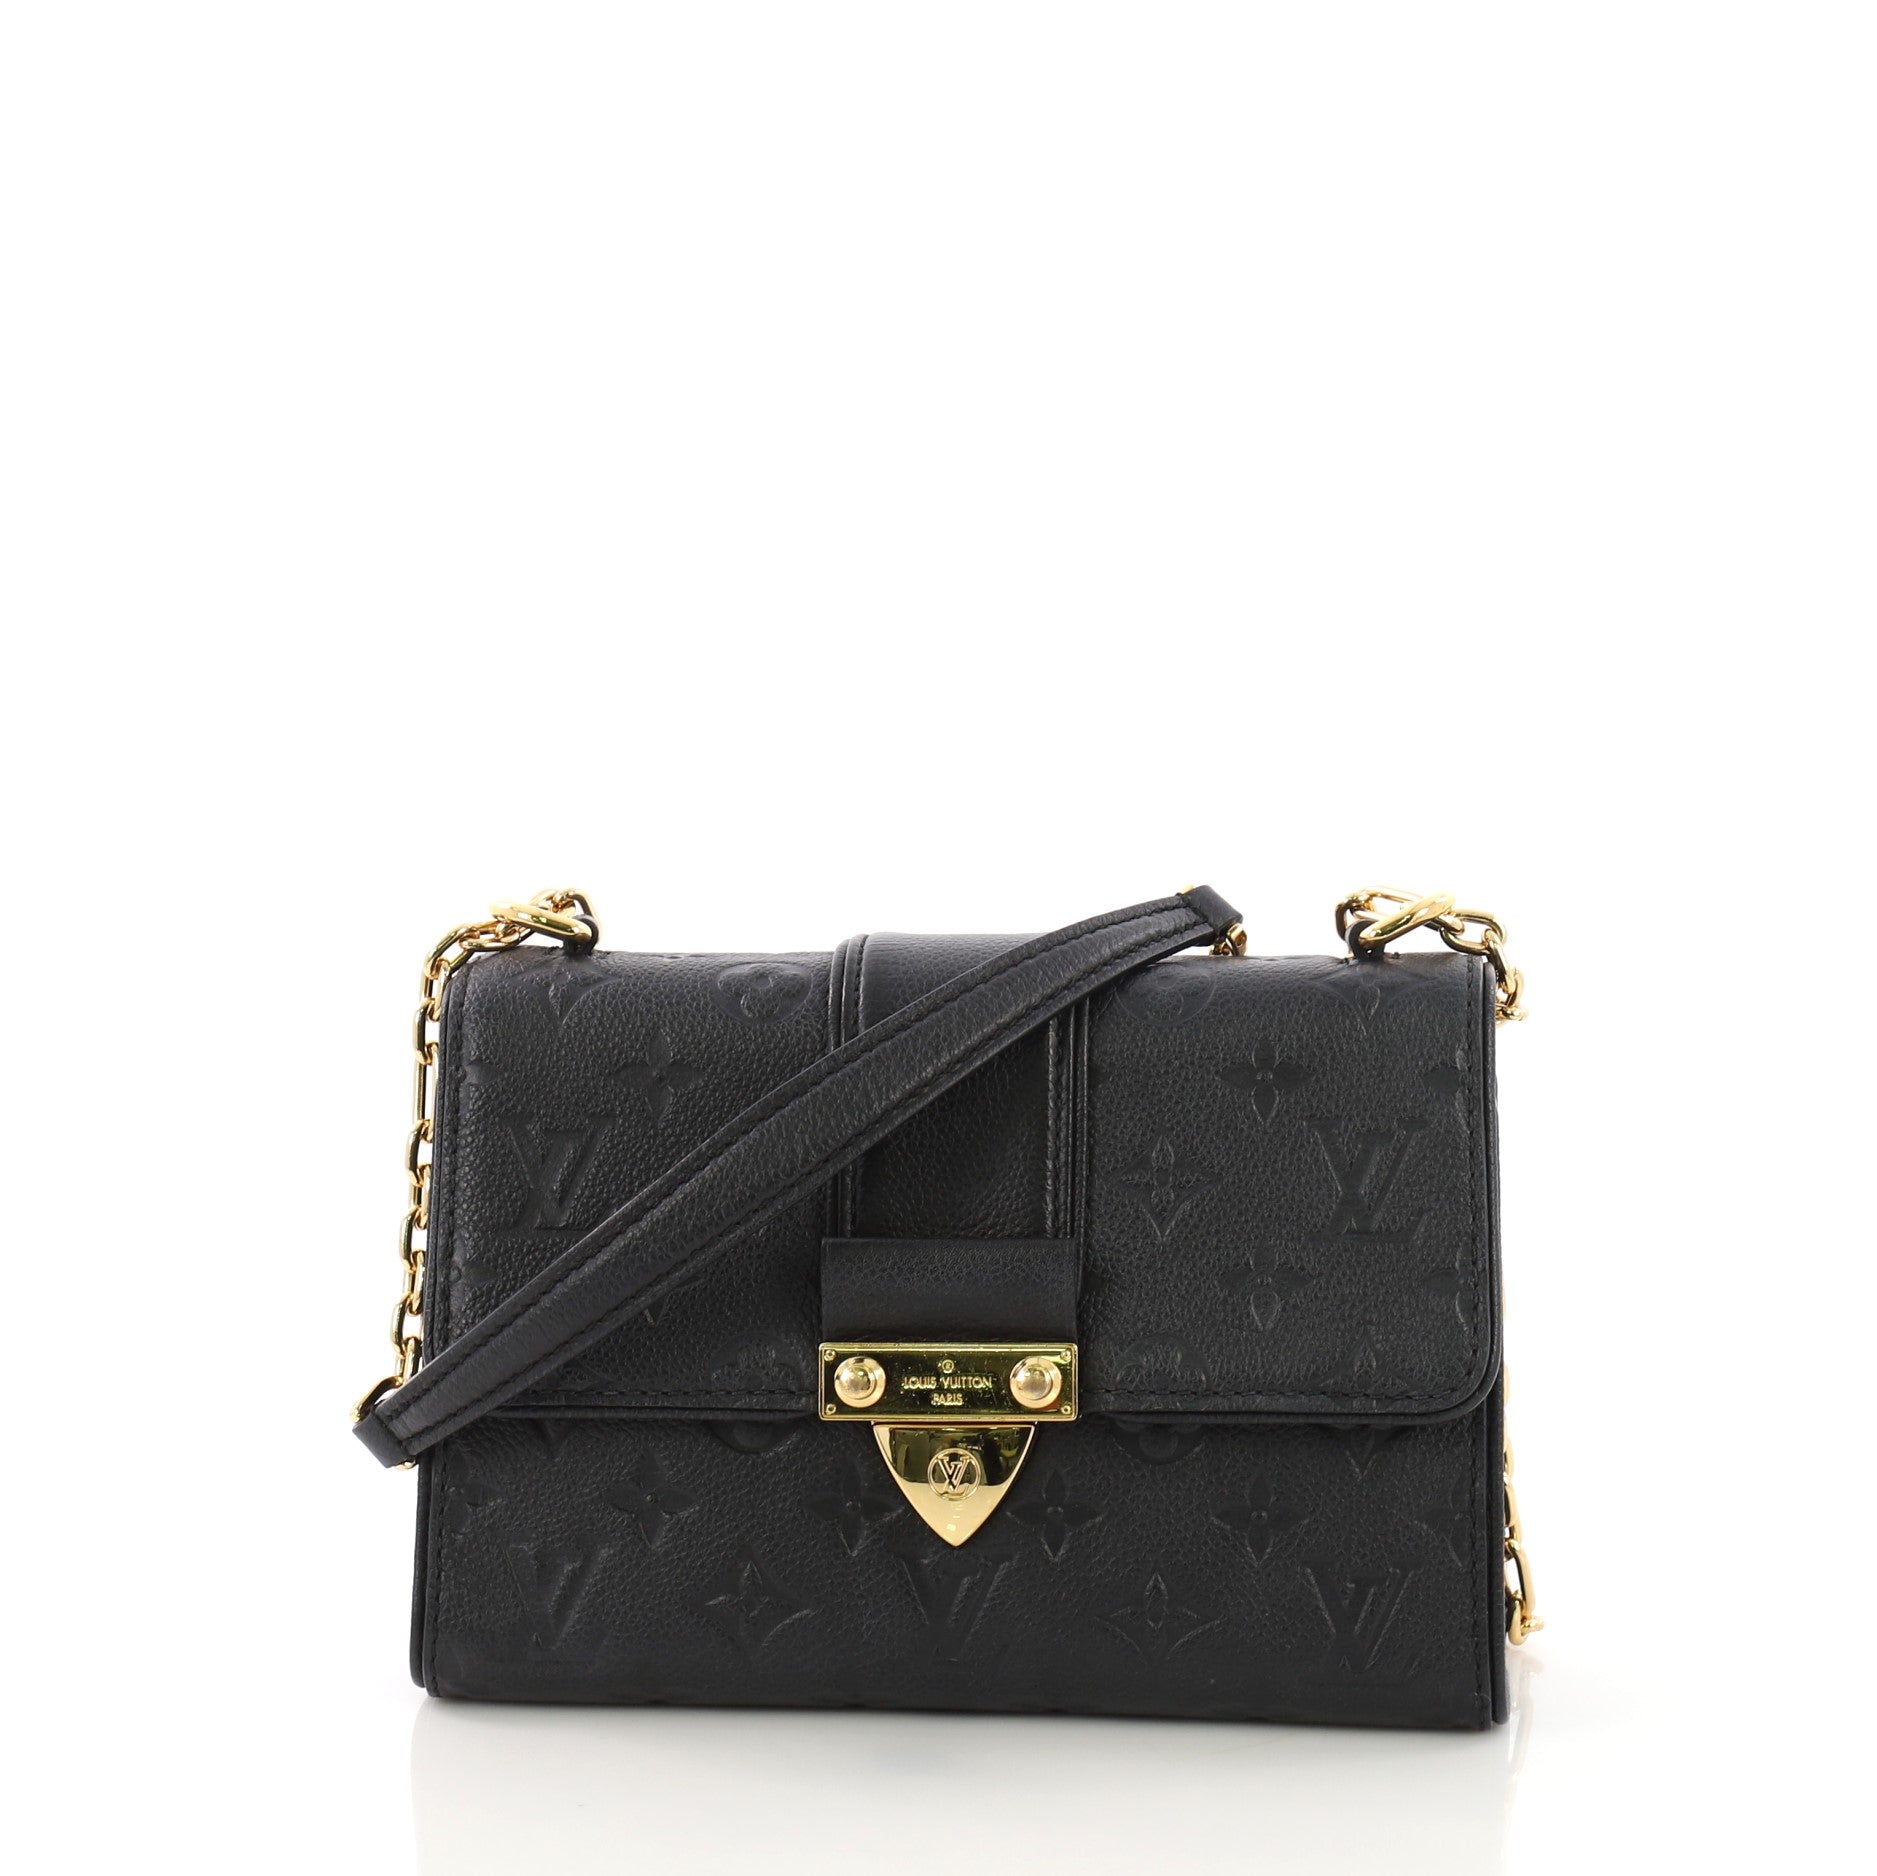 Louis Vuitton Capucines Shoulder bag 391026